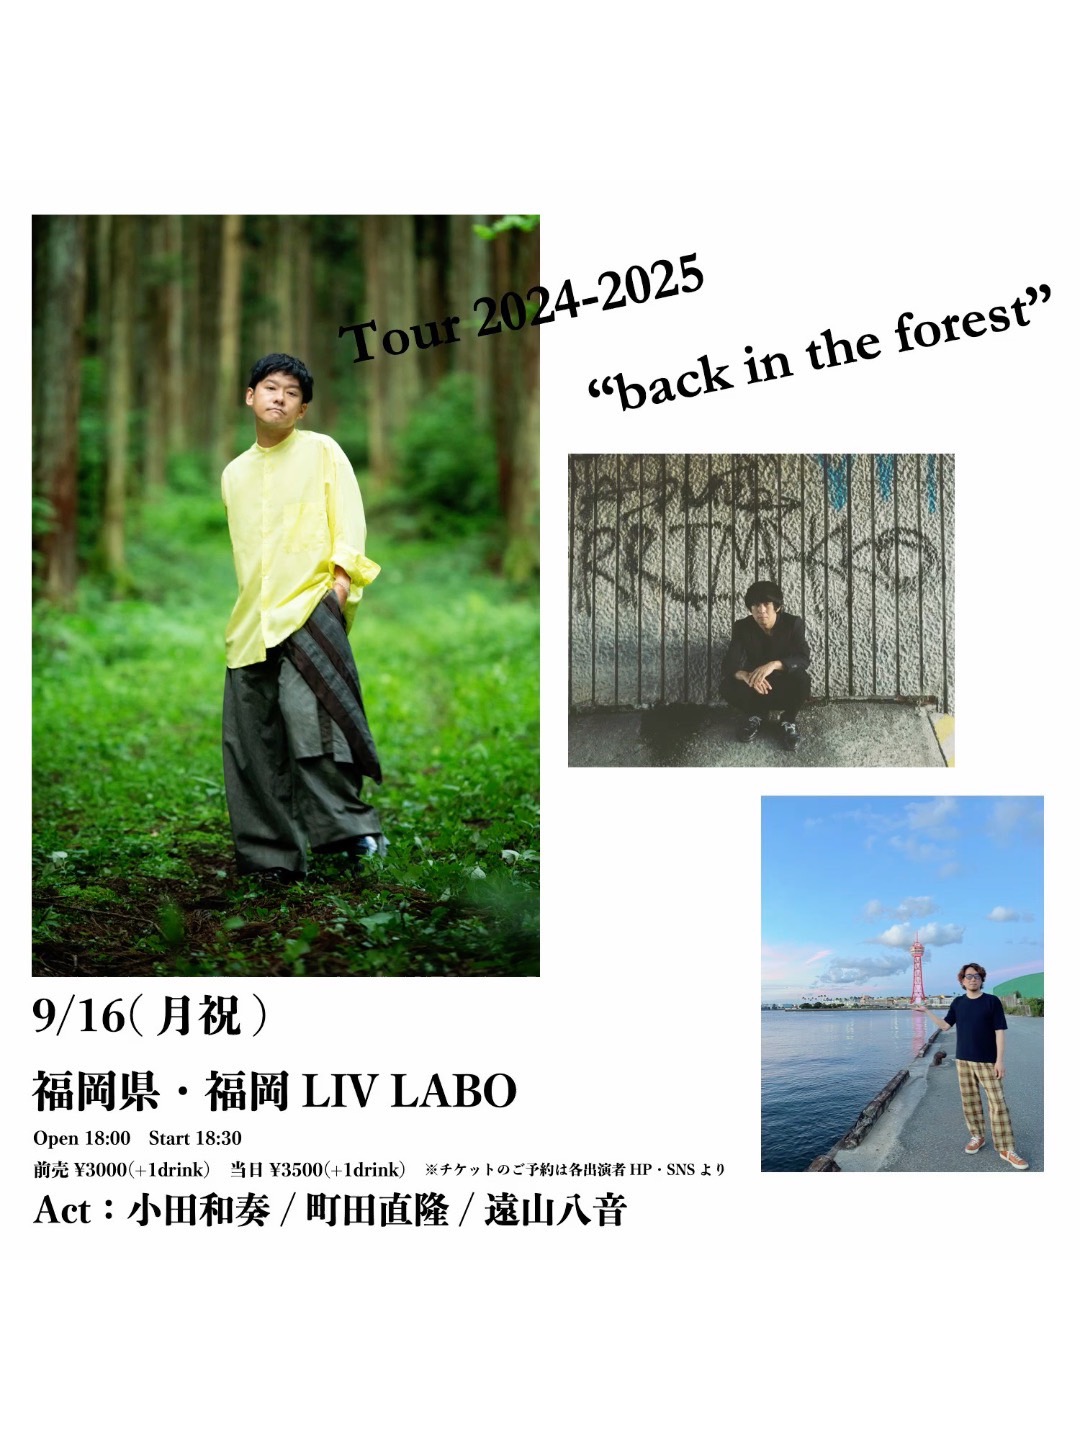 小田和奏 Tour 2024-2025 “back in the forest”